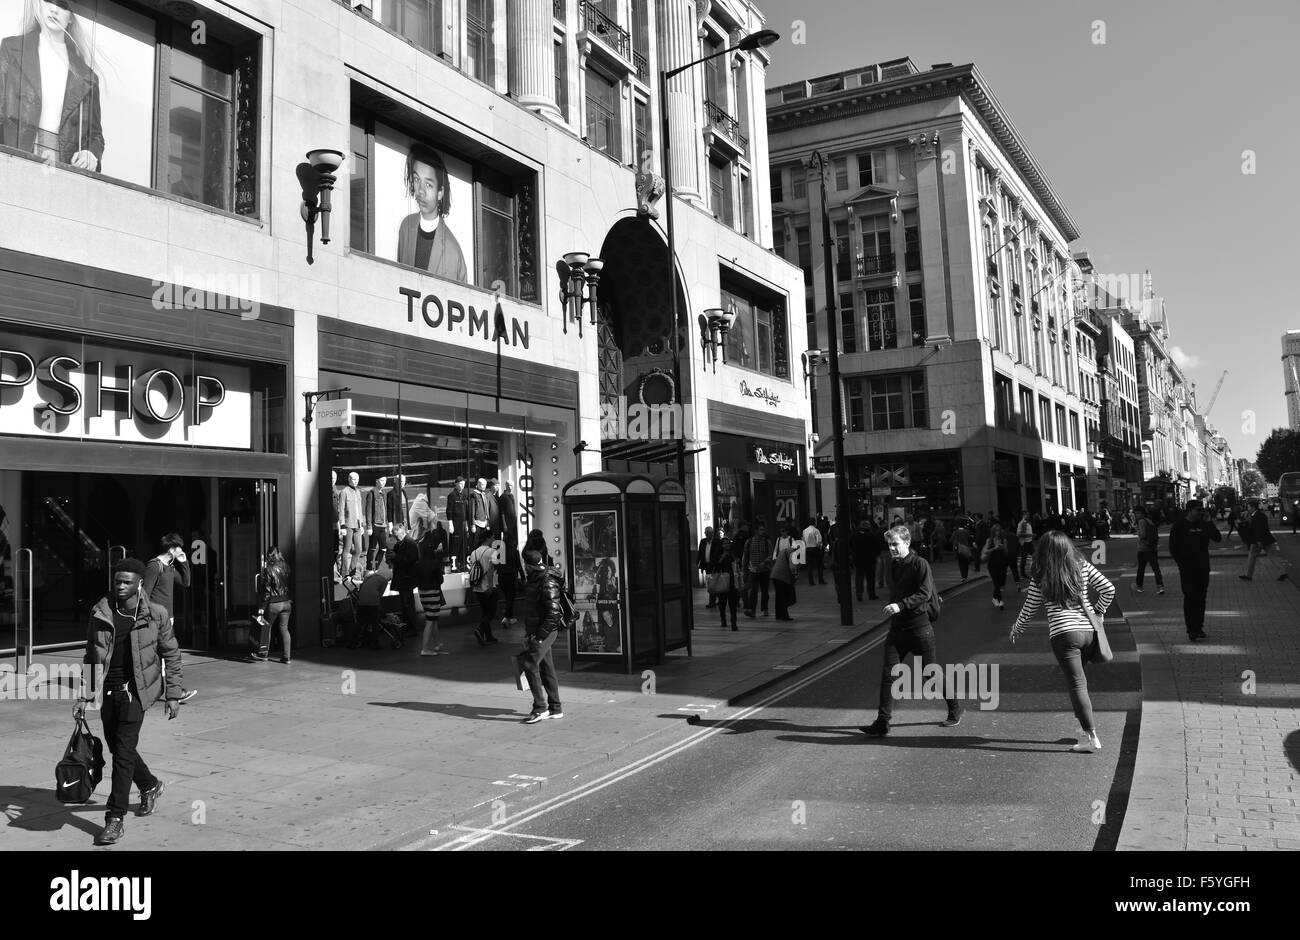 Top Shop, les gens en train de traverser, Oxford Street, Londres, Angleterre, Royaume-Uni, GB. Banque D'Images